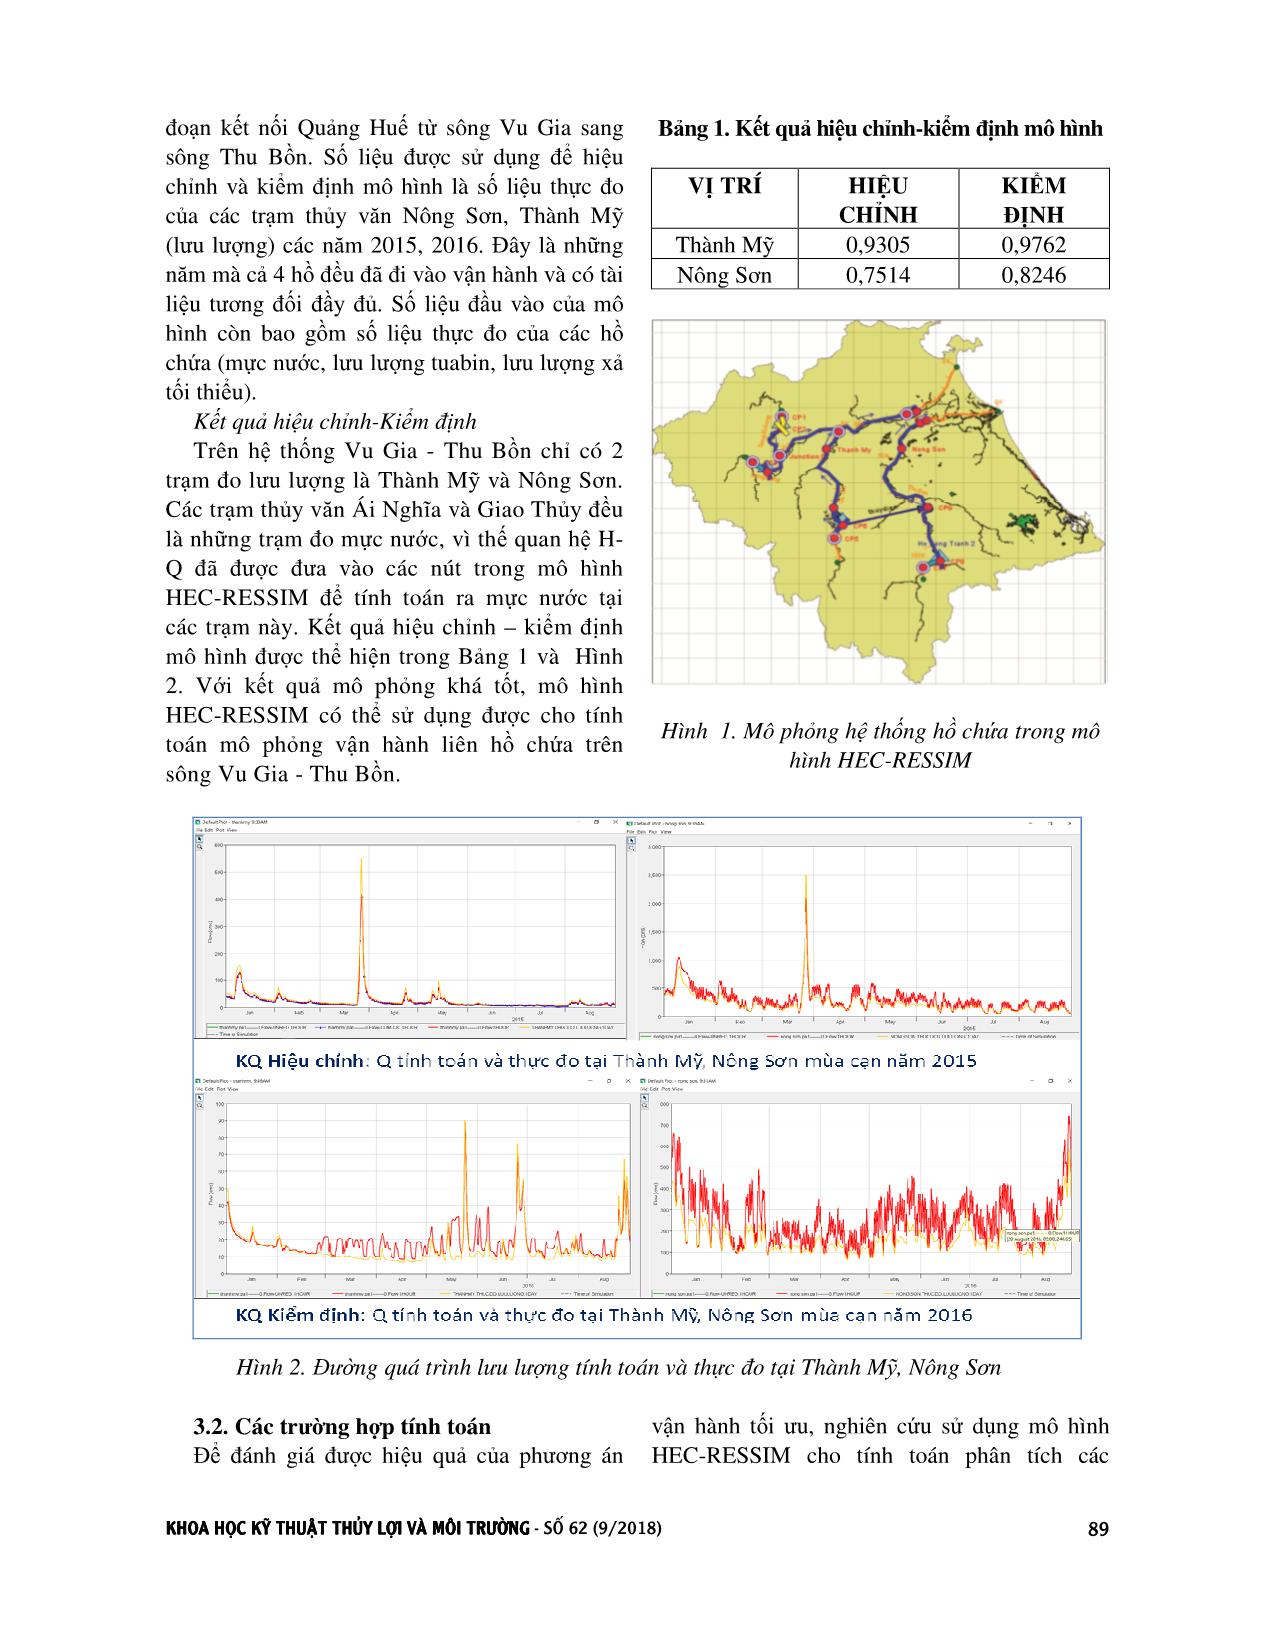 Nghiên cứu, mô phỏng vận hành hệ thống liên hồ chứa lưu vực sông Vu Gia - thu bồn trong mùa cạn bằng mô hình Hec-Ressim trang 3